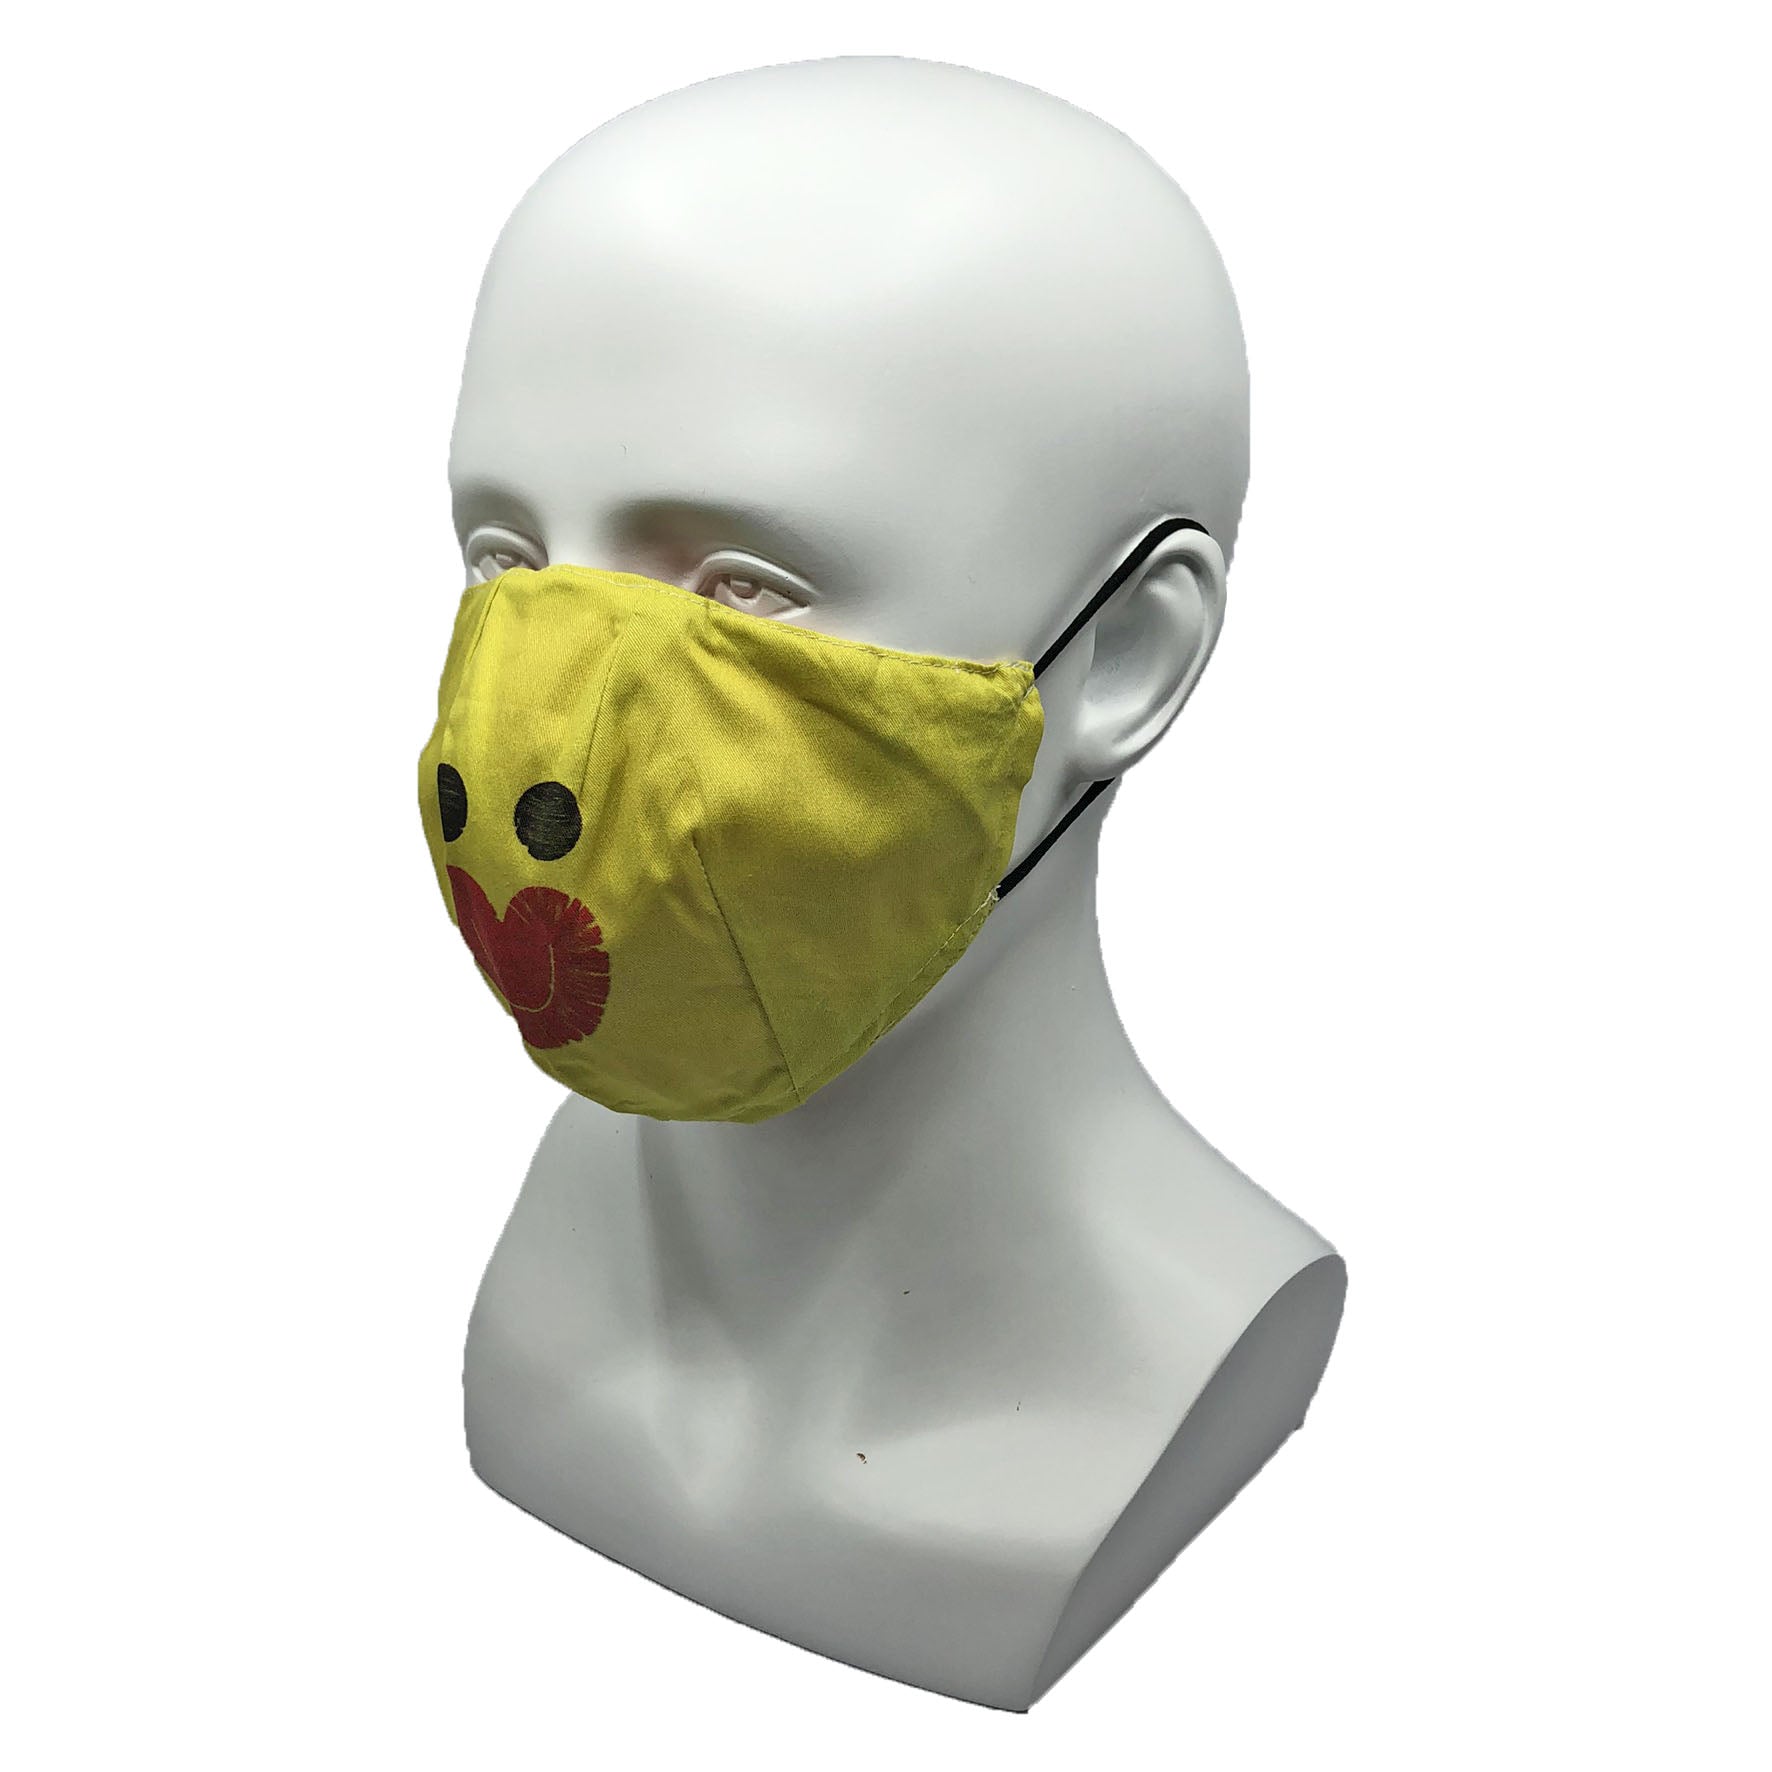 HO JENG AR Bandit Face Mask, DanDan